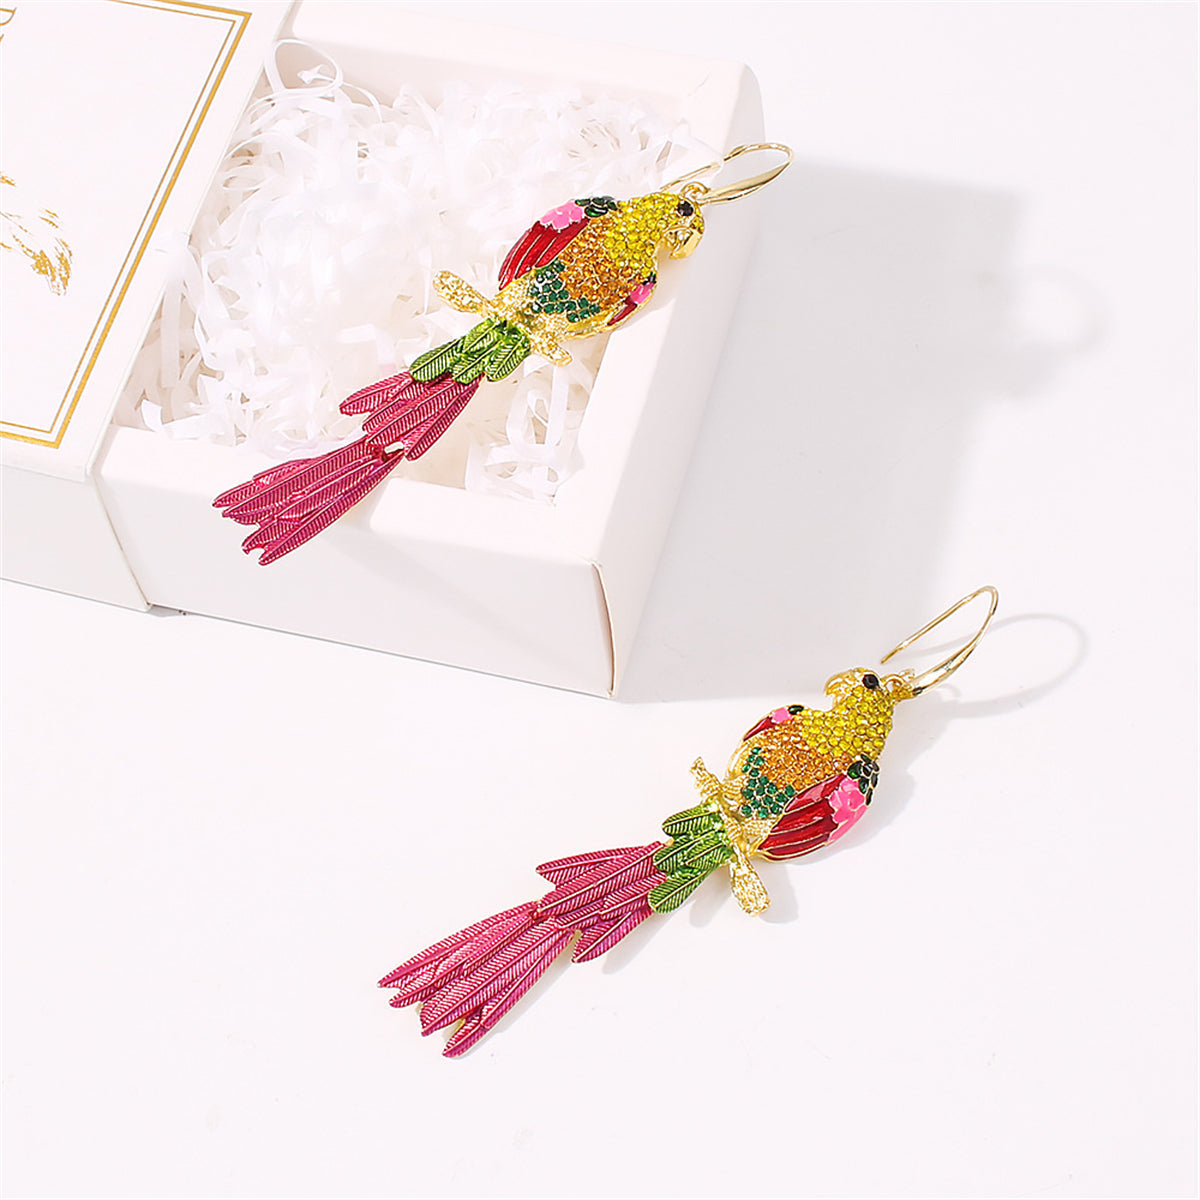 Pink Enamel & Yellow Cubic Zirconia Parrot Drop Earrings